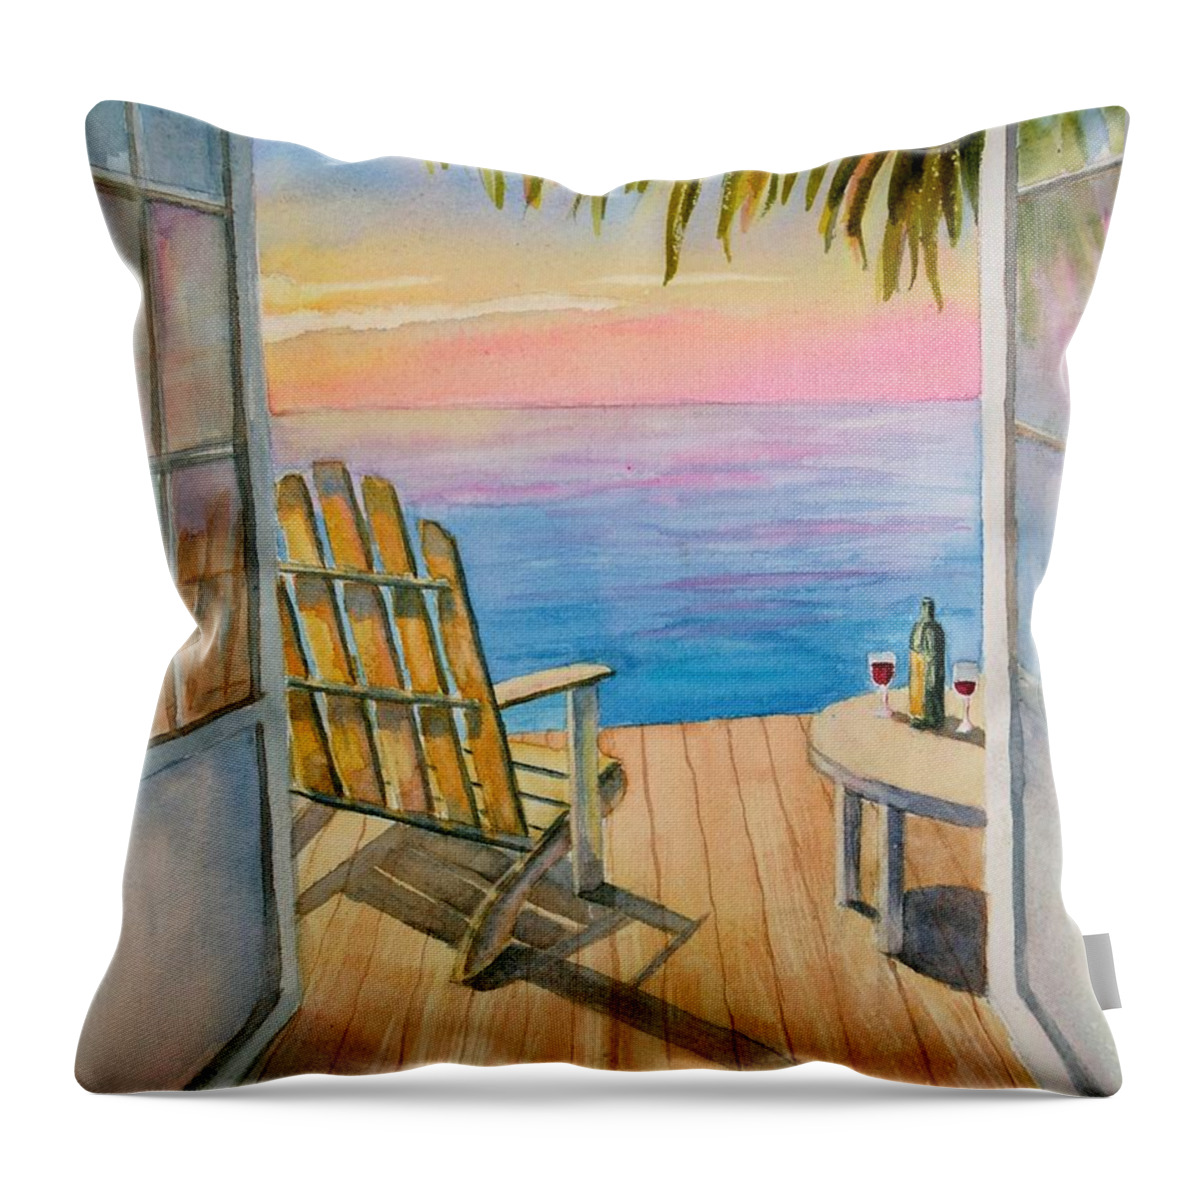 Florida Throw Pillow featuring the painting Florida Sunset by Petra Burgmann